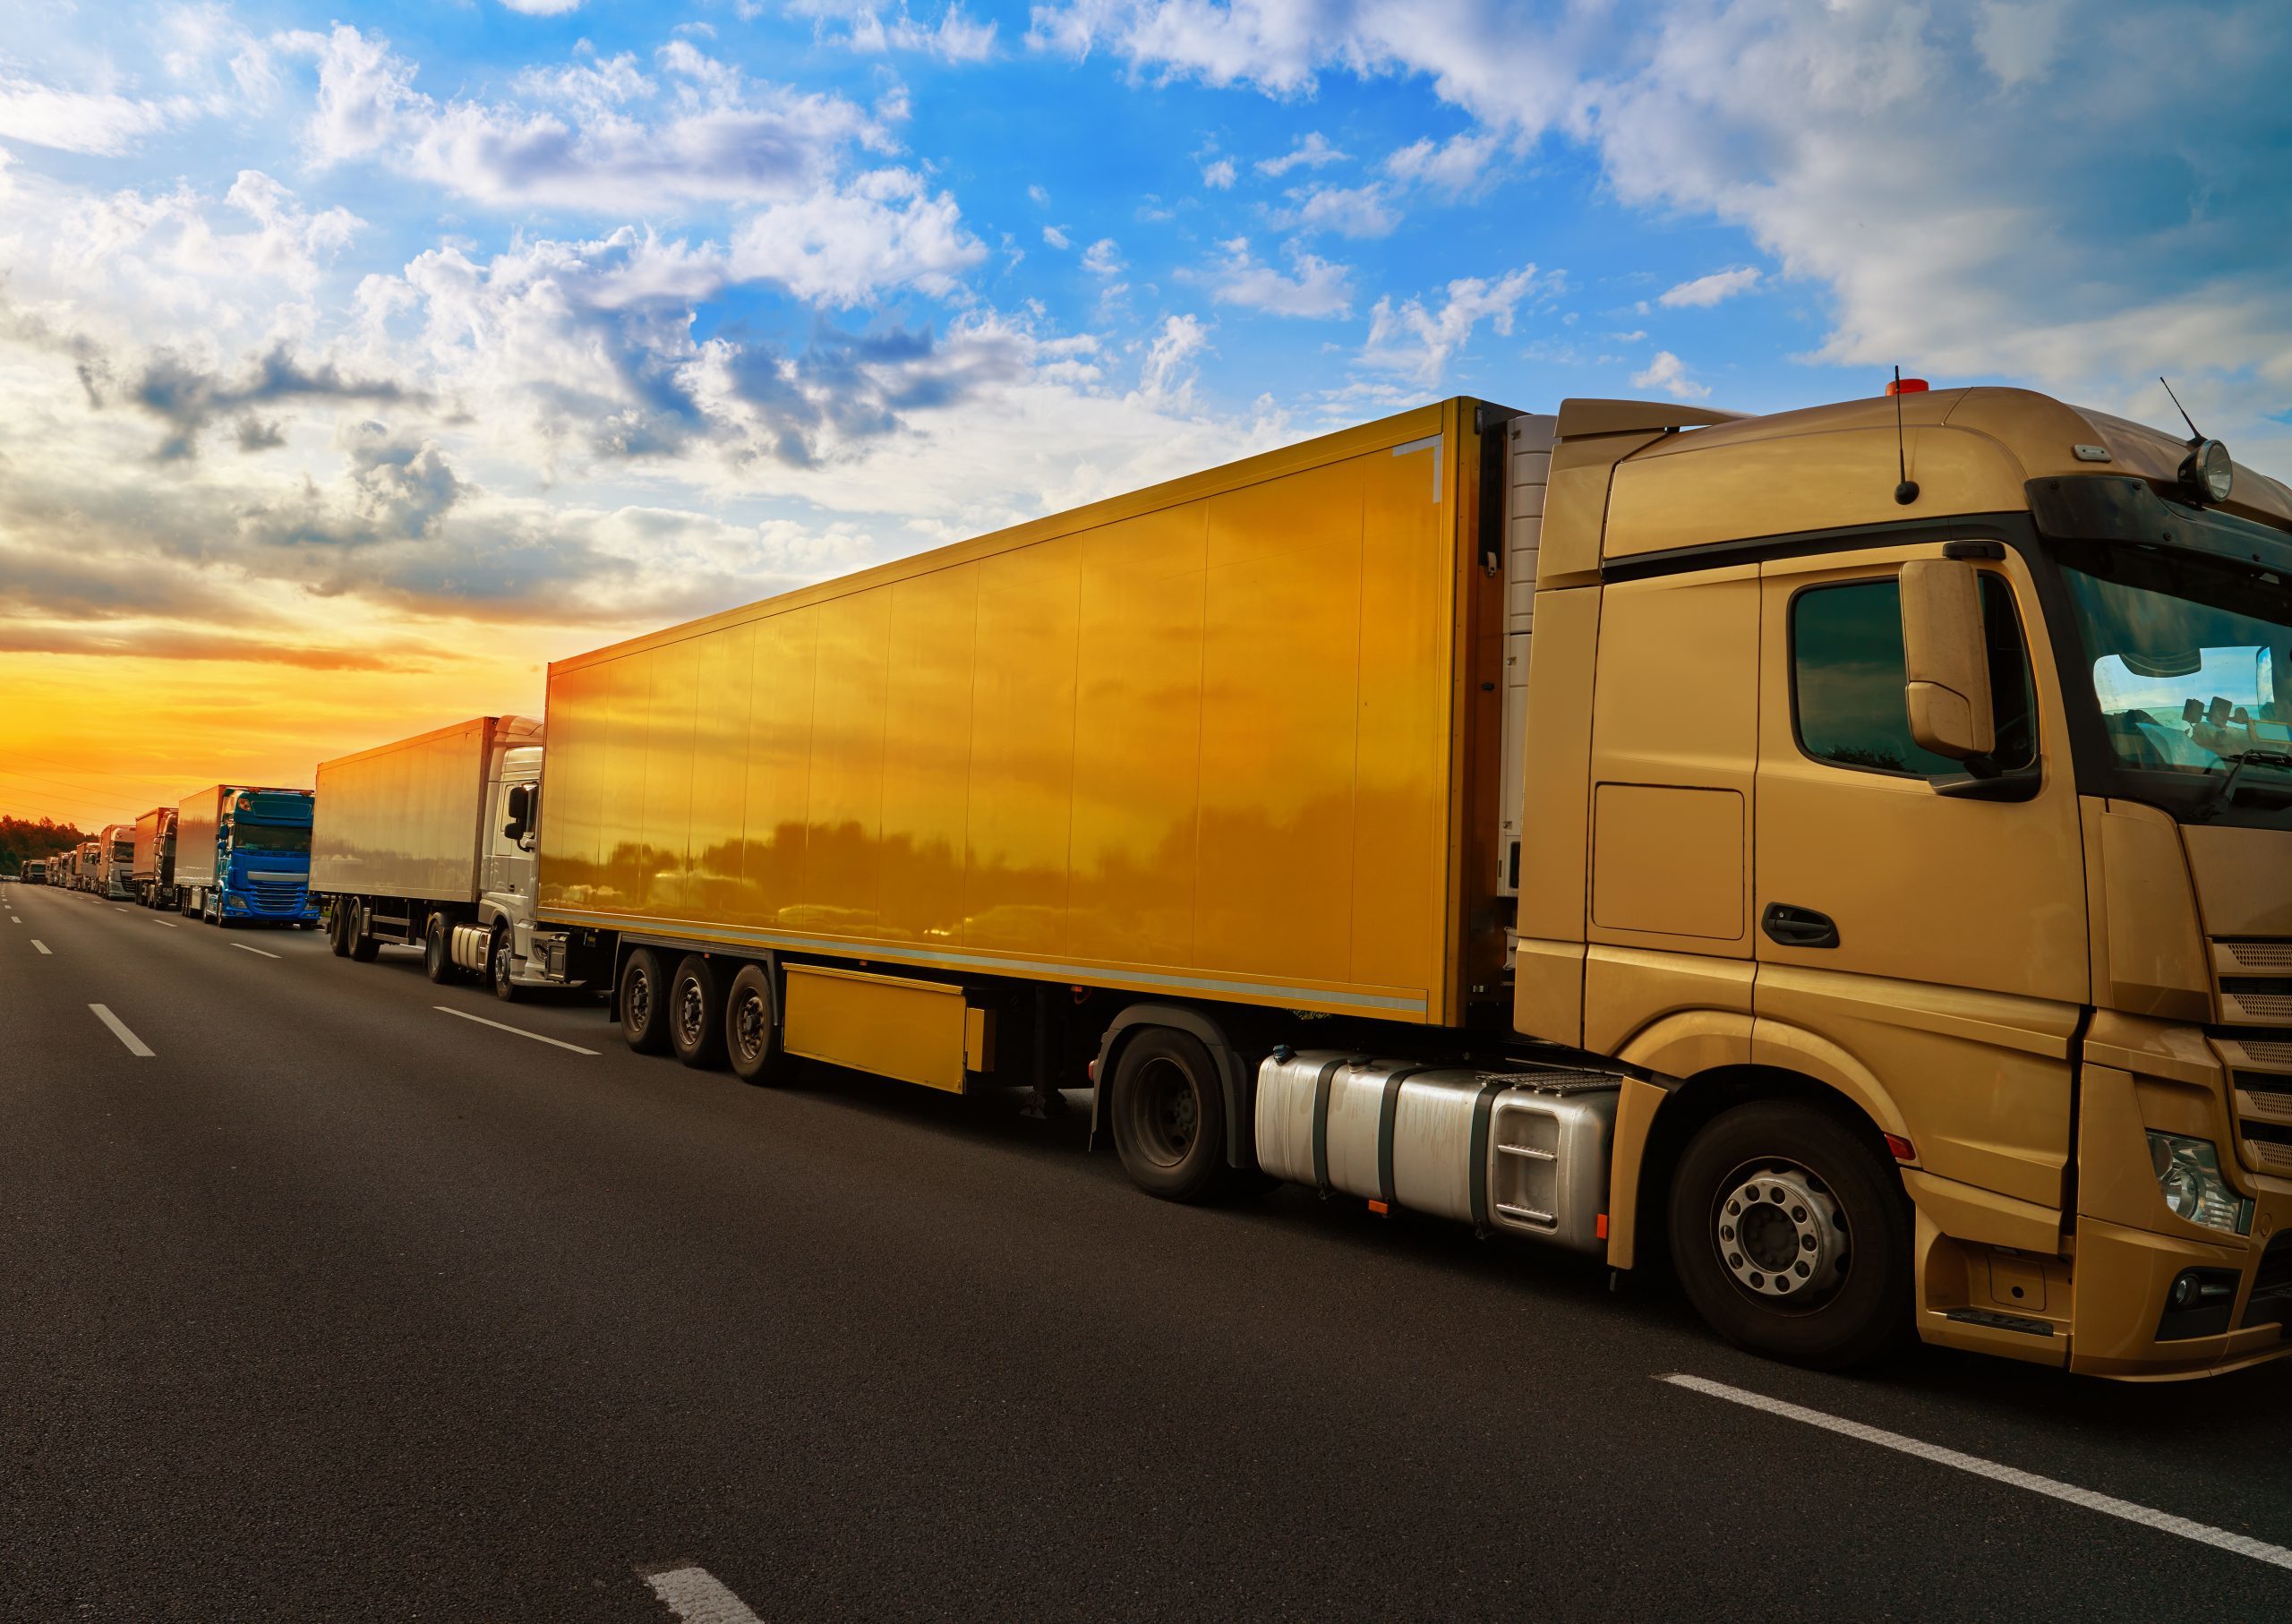 Los camiones nuevos producen emisiones "alarmantes" según T&E